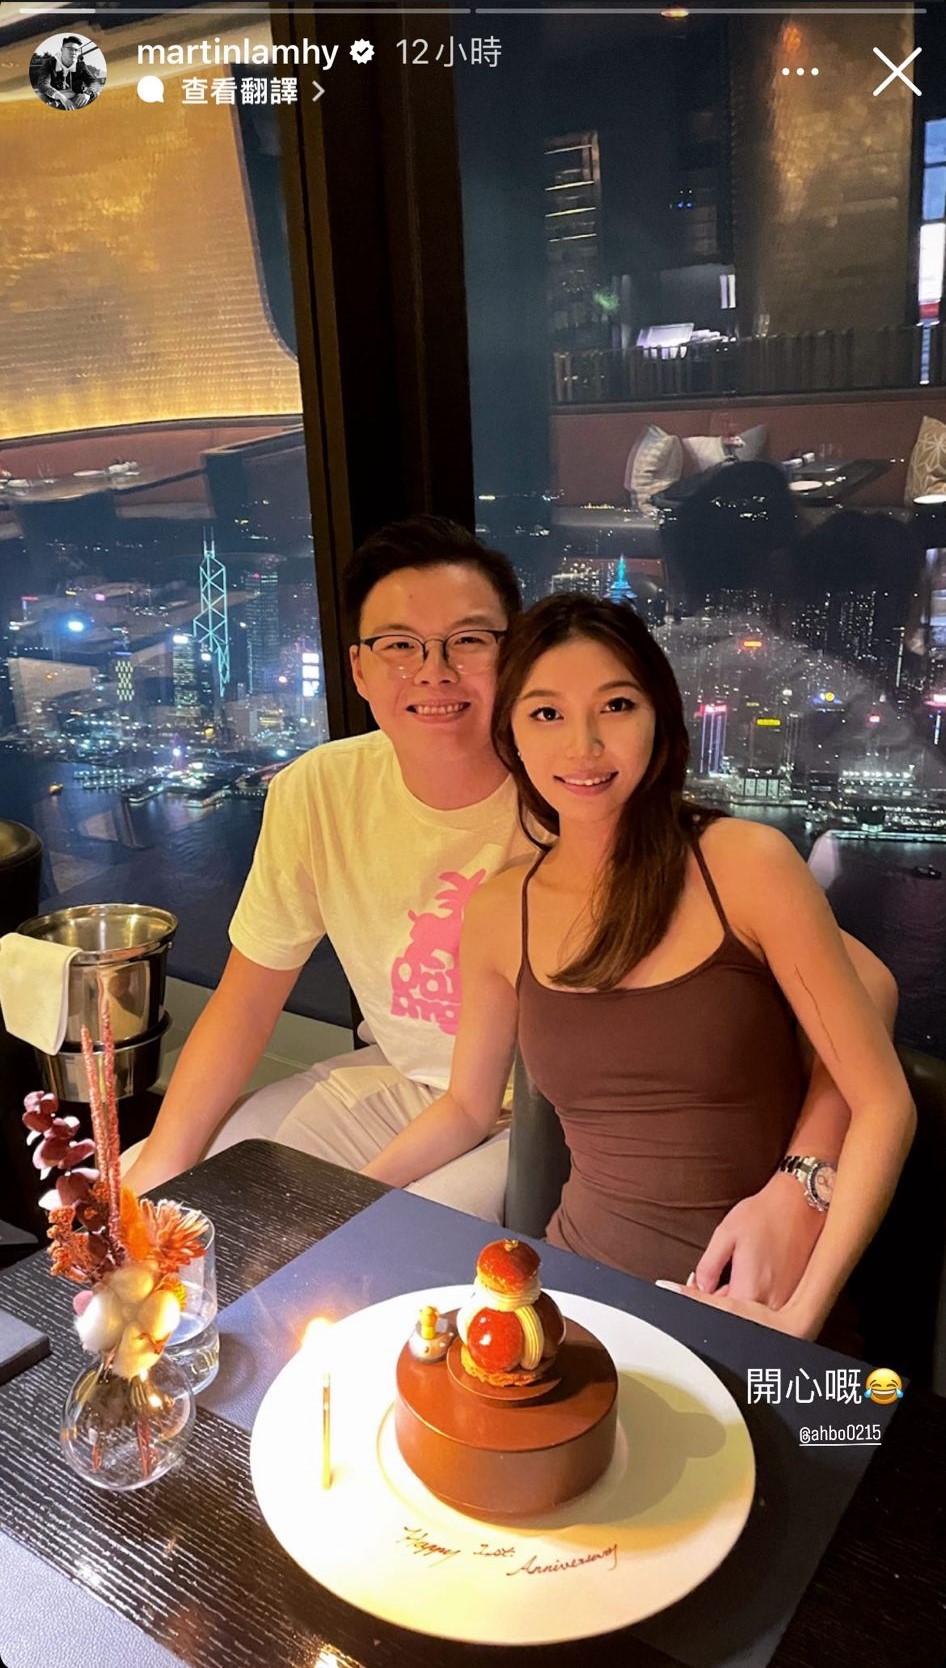 林浩賢昨晚（15日）於IG Story高調晒與女友「ahbo0215」的合照，慶祝二人拍拖一周年。